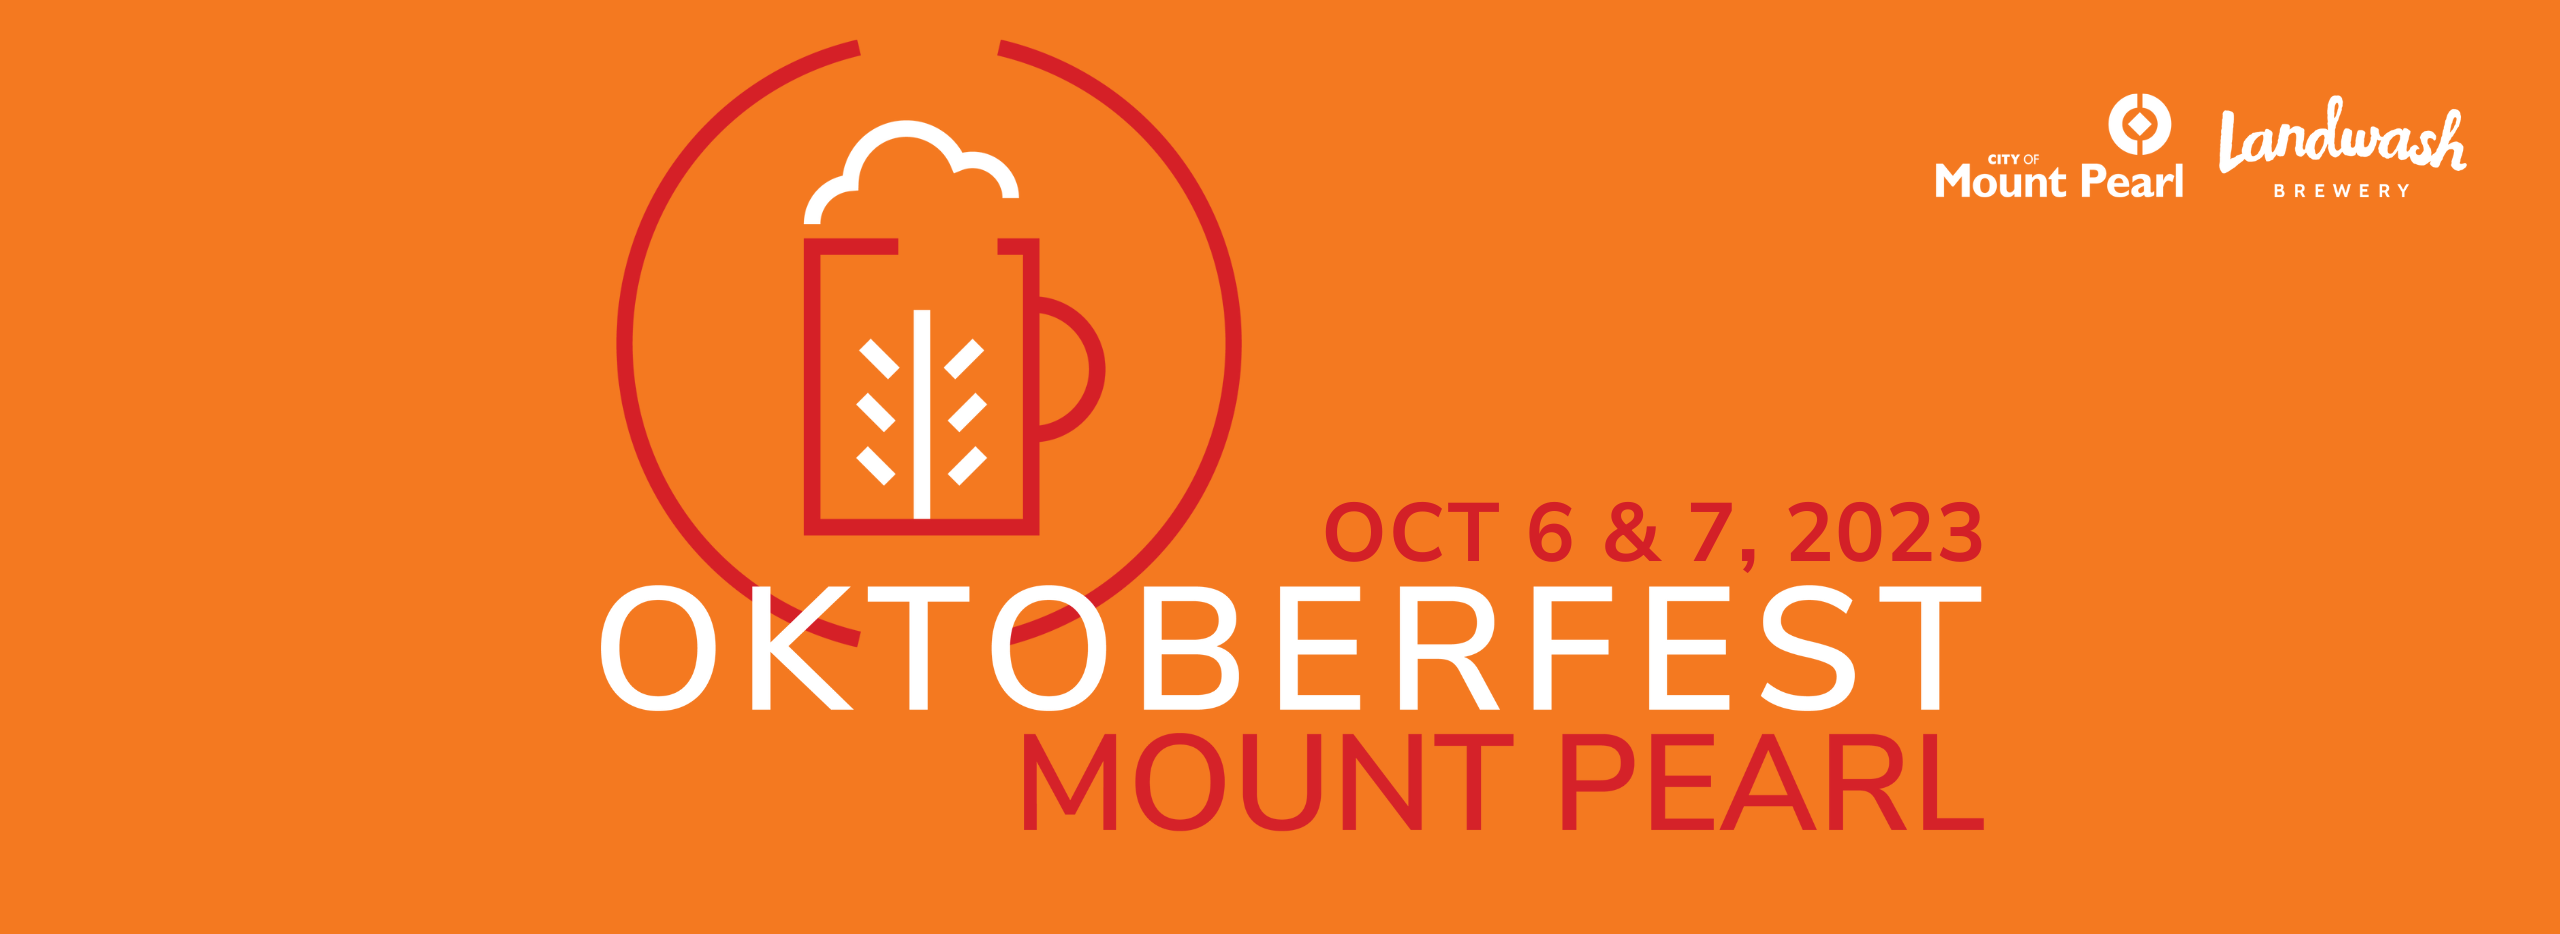 Oktoberfest MP_Website Banner